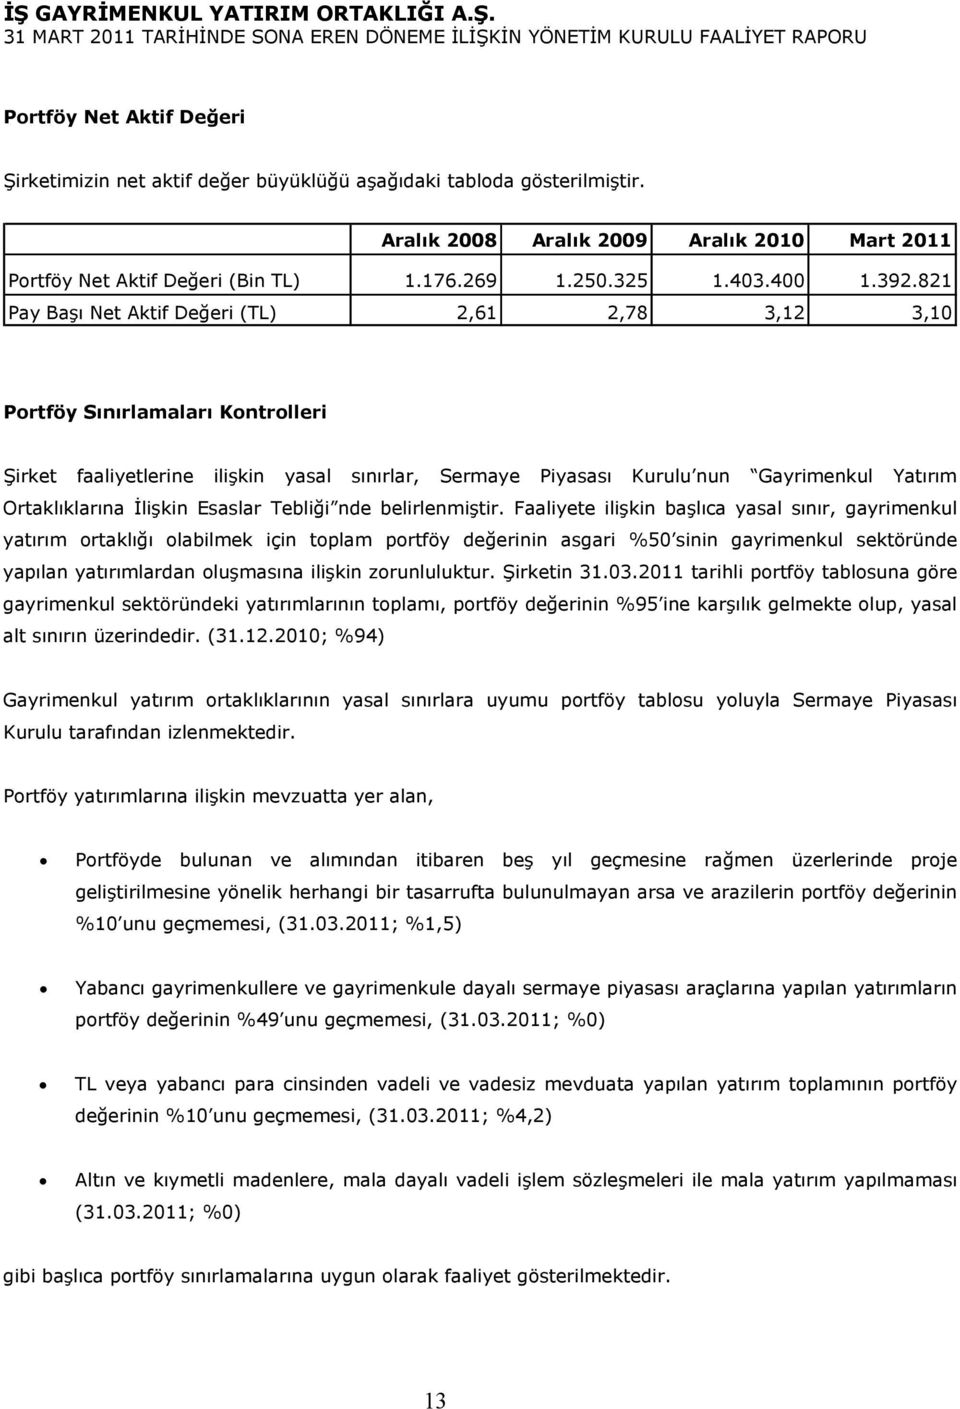 821 Pay Başı Net Aktif Değeri (TL) 2,61 2,78 3,12 3,10 Portföy Sınırlamaları Kontrolleri Şirket faaliyetlerine ilişkin yasal sınırlar, Sermaye Piyasası Kurulu nun Gayrimenkul Yatırım Ortaklıklarına